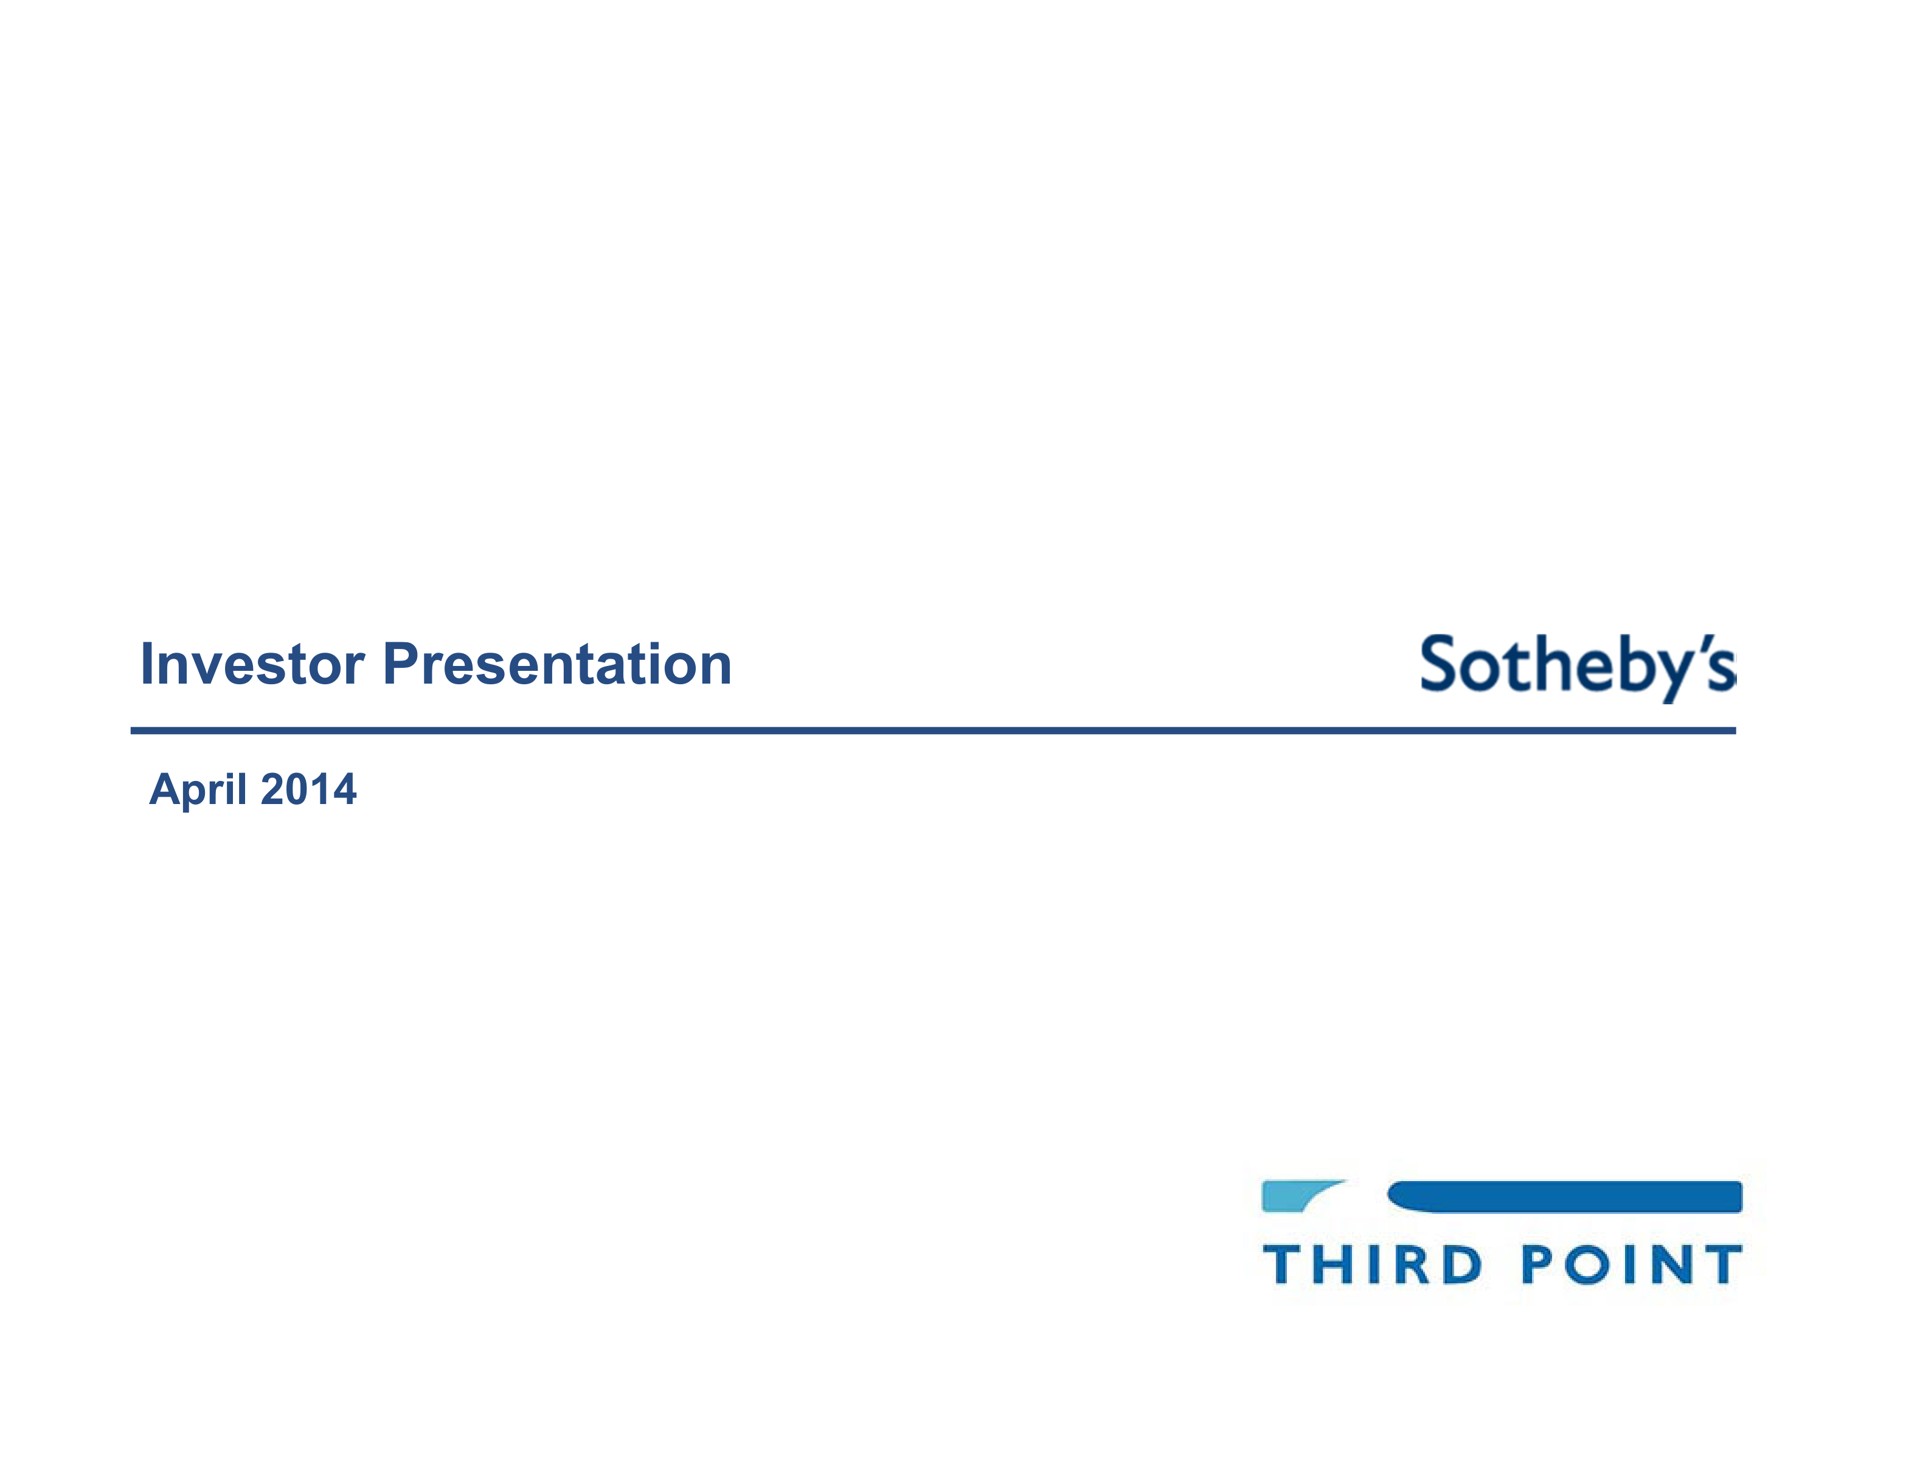 investor presentation third point | Third Point Management